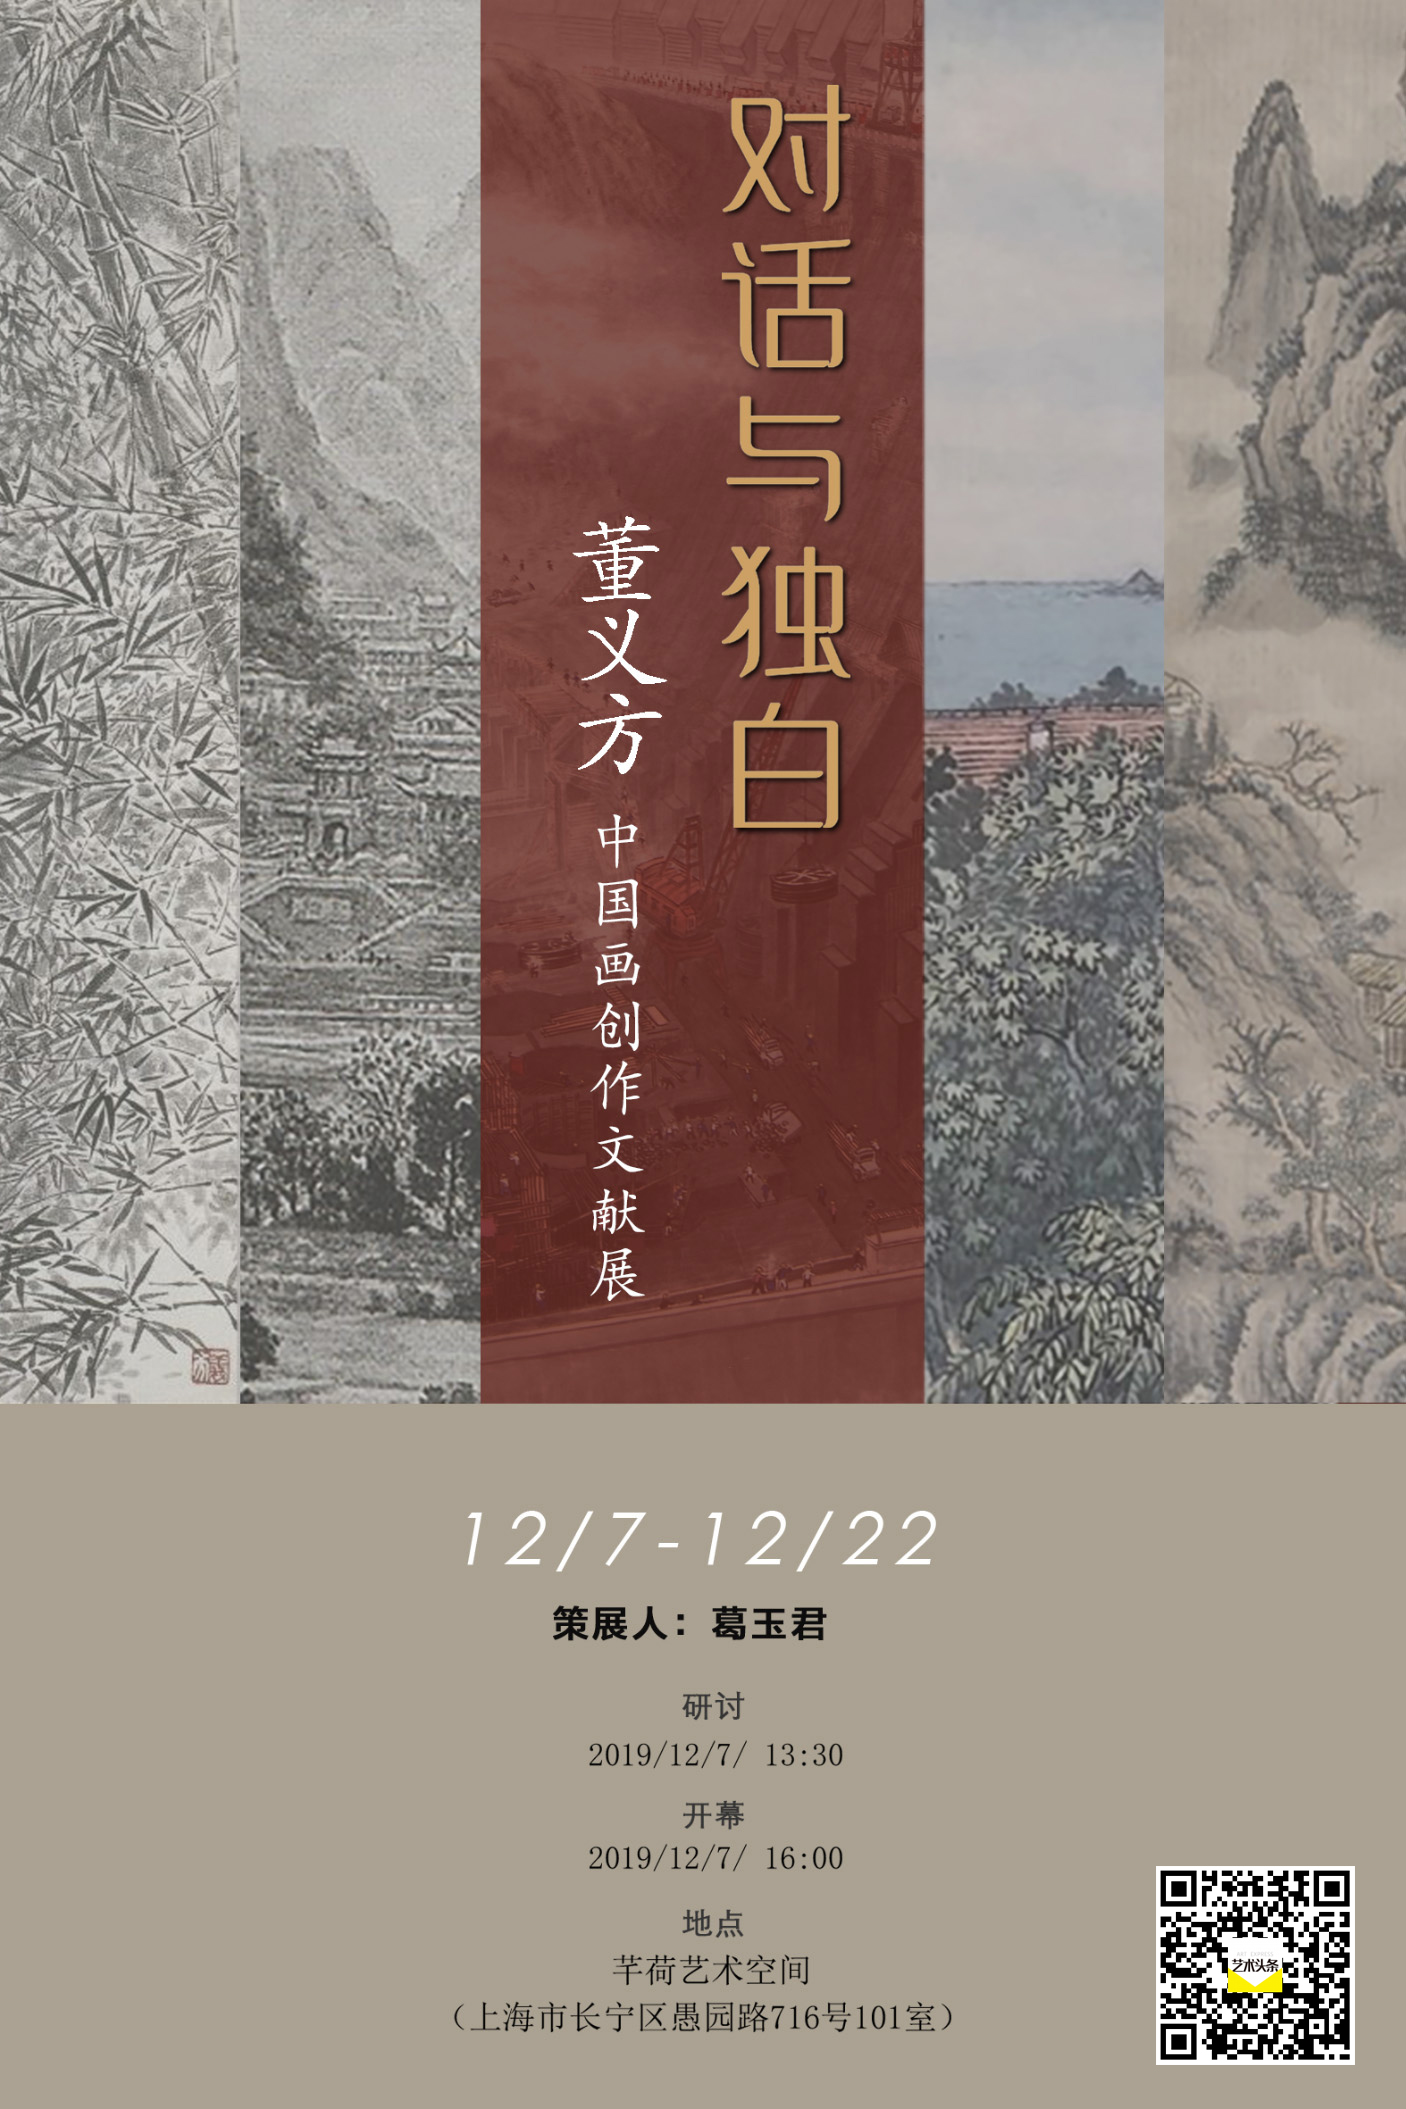 对话与独白——董义方中国画创作文献展